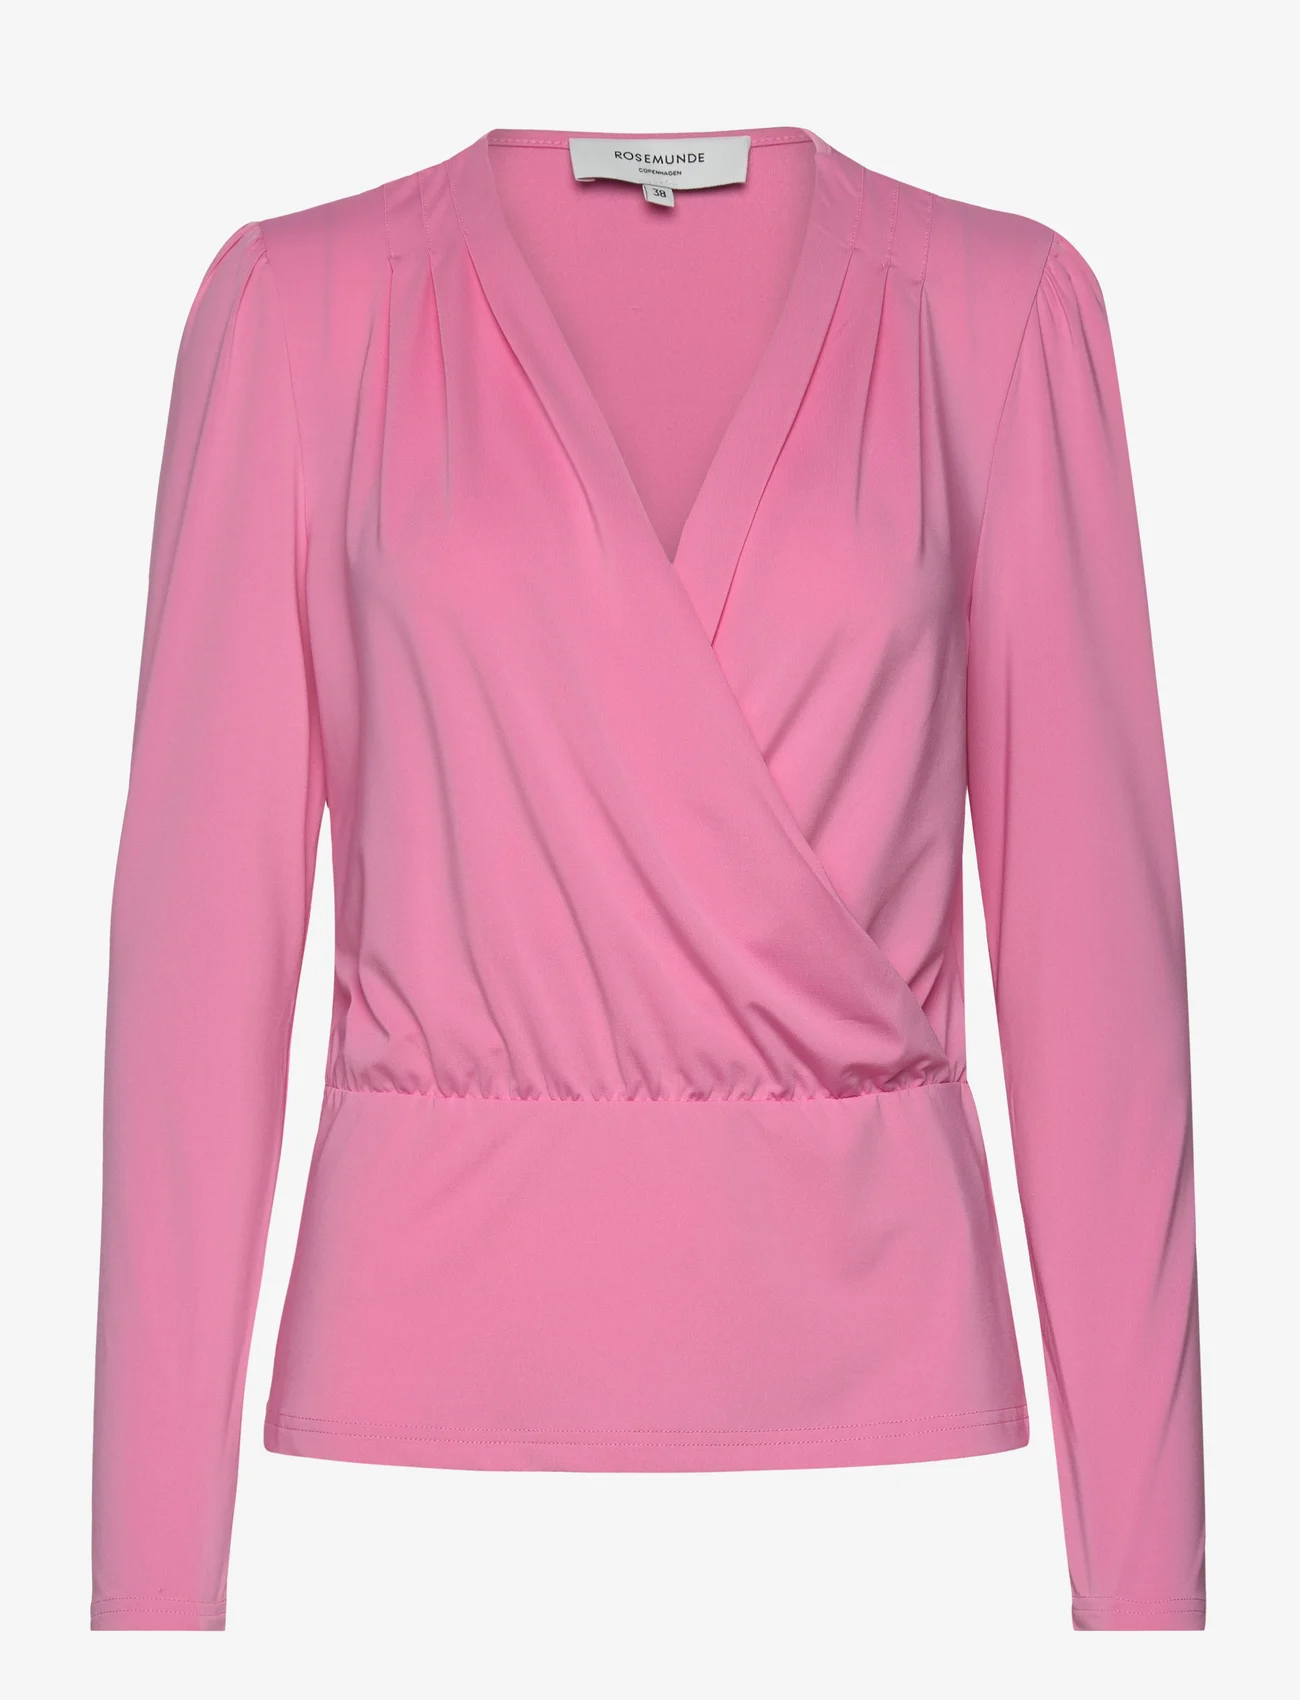 Rosemunde - T-Shirt - t-shirts met lange mouwen - bubblegum pink - 0